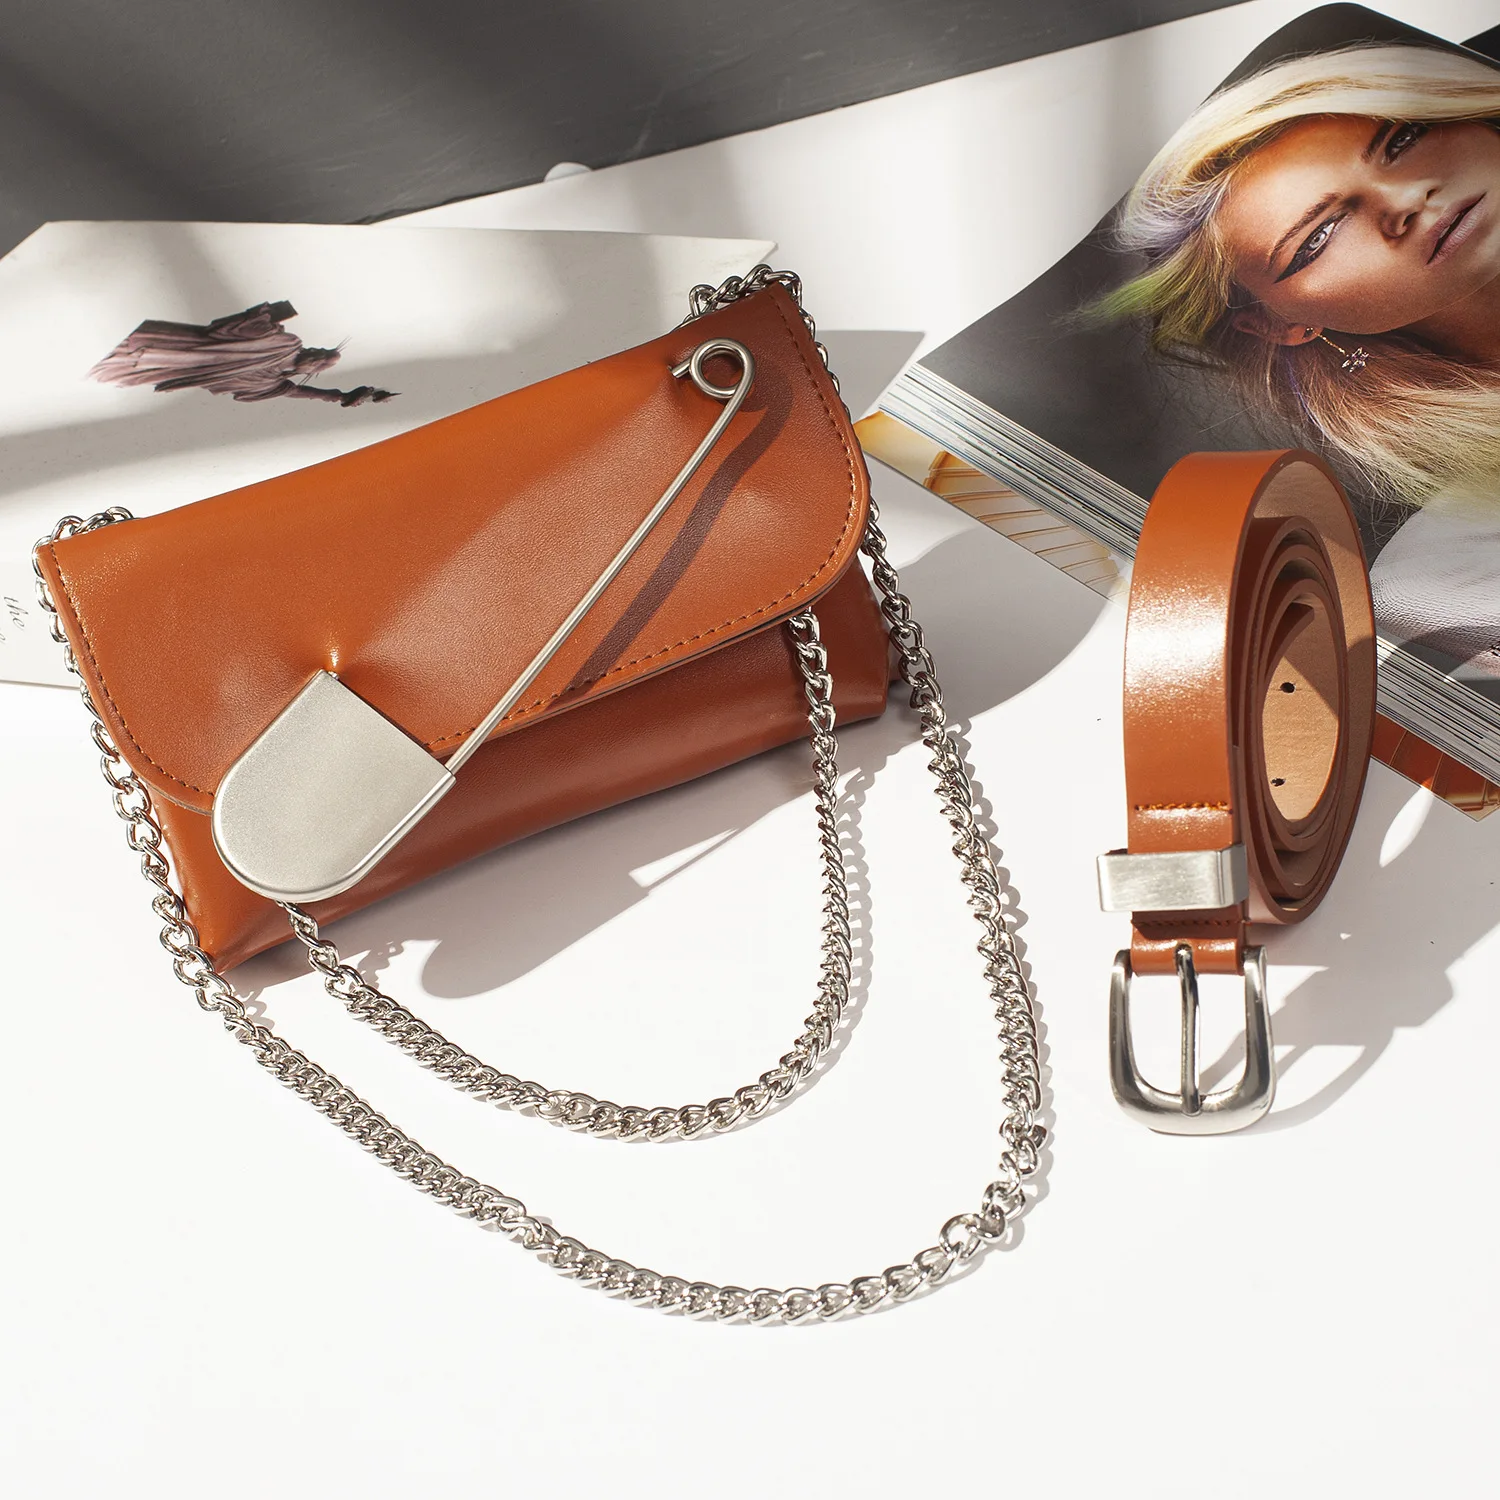 2019 новые модные поясные сумки женские одноцветные PU кожаная поясная сумка женские поясные сумки Дамский телефон кошелек на талию